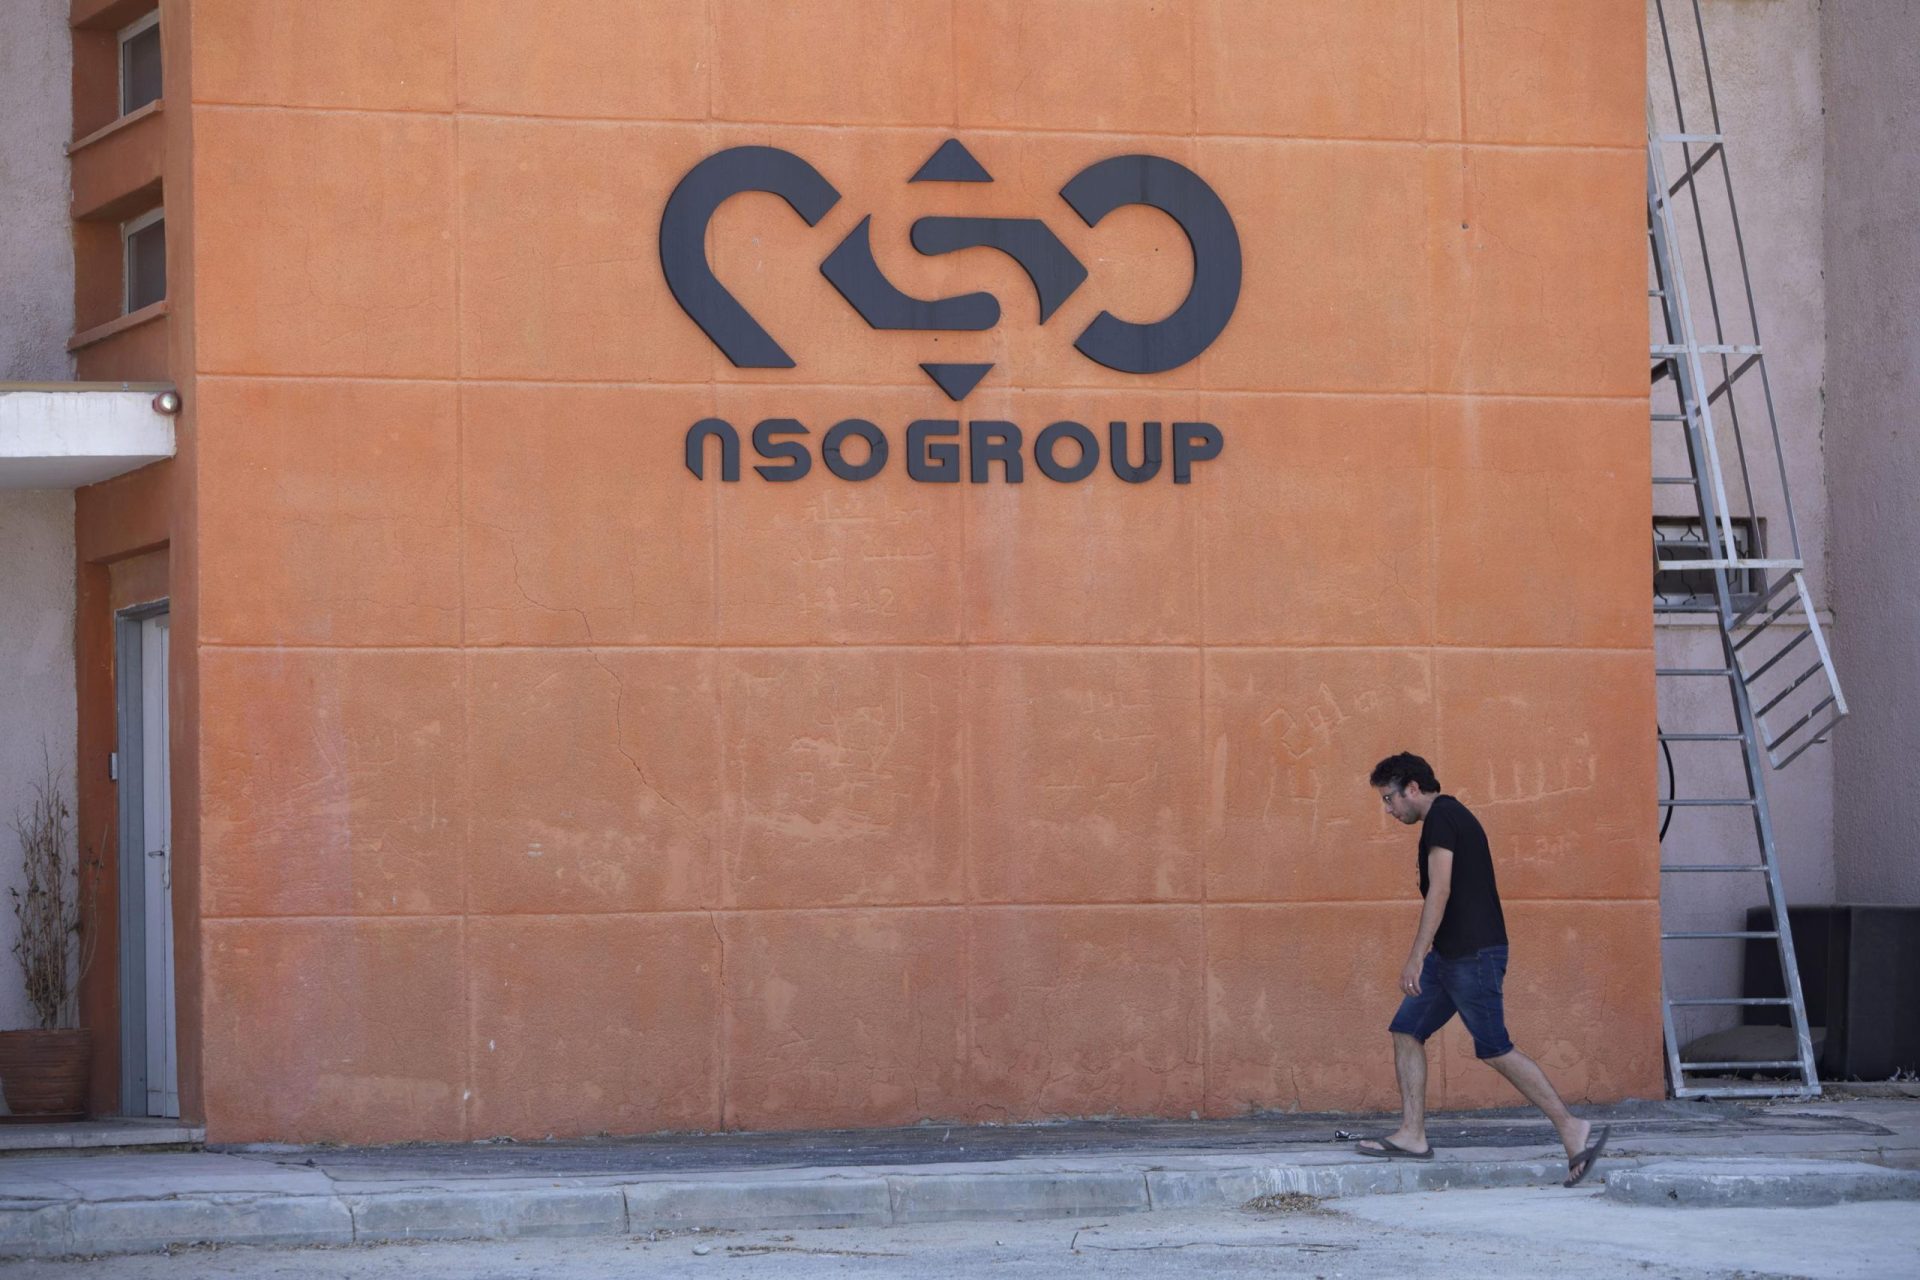 El jefe de NSO dimite mientras la empresa israelí de software espía se reestructura